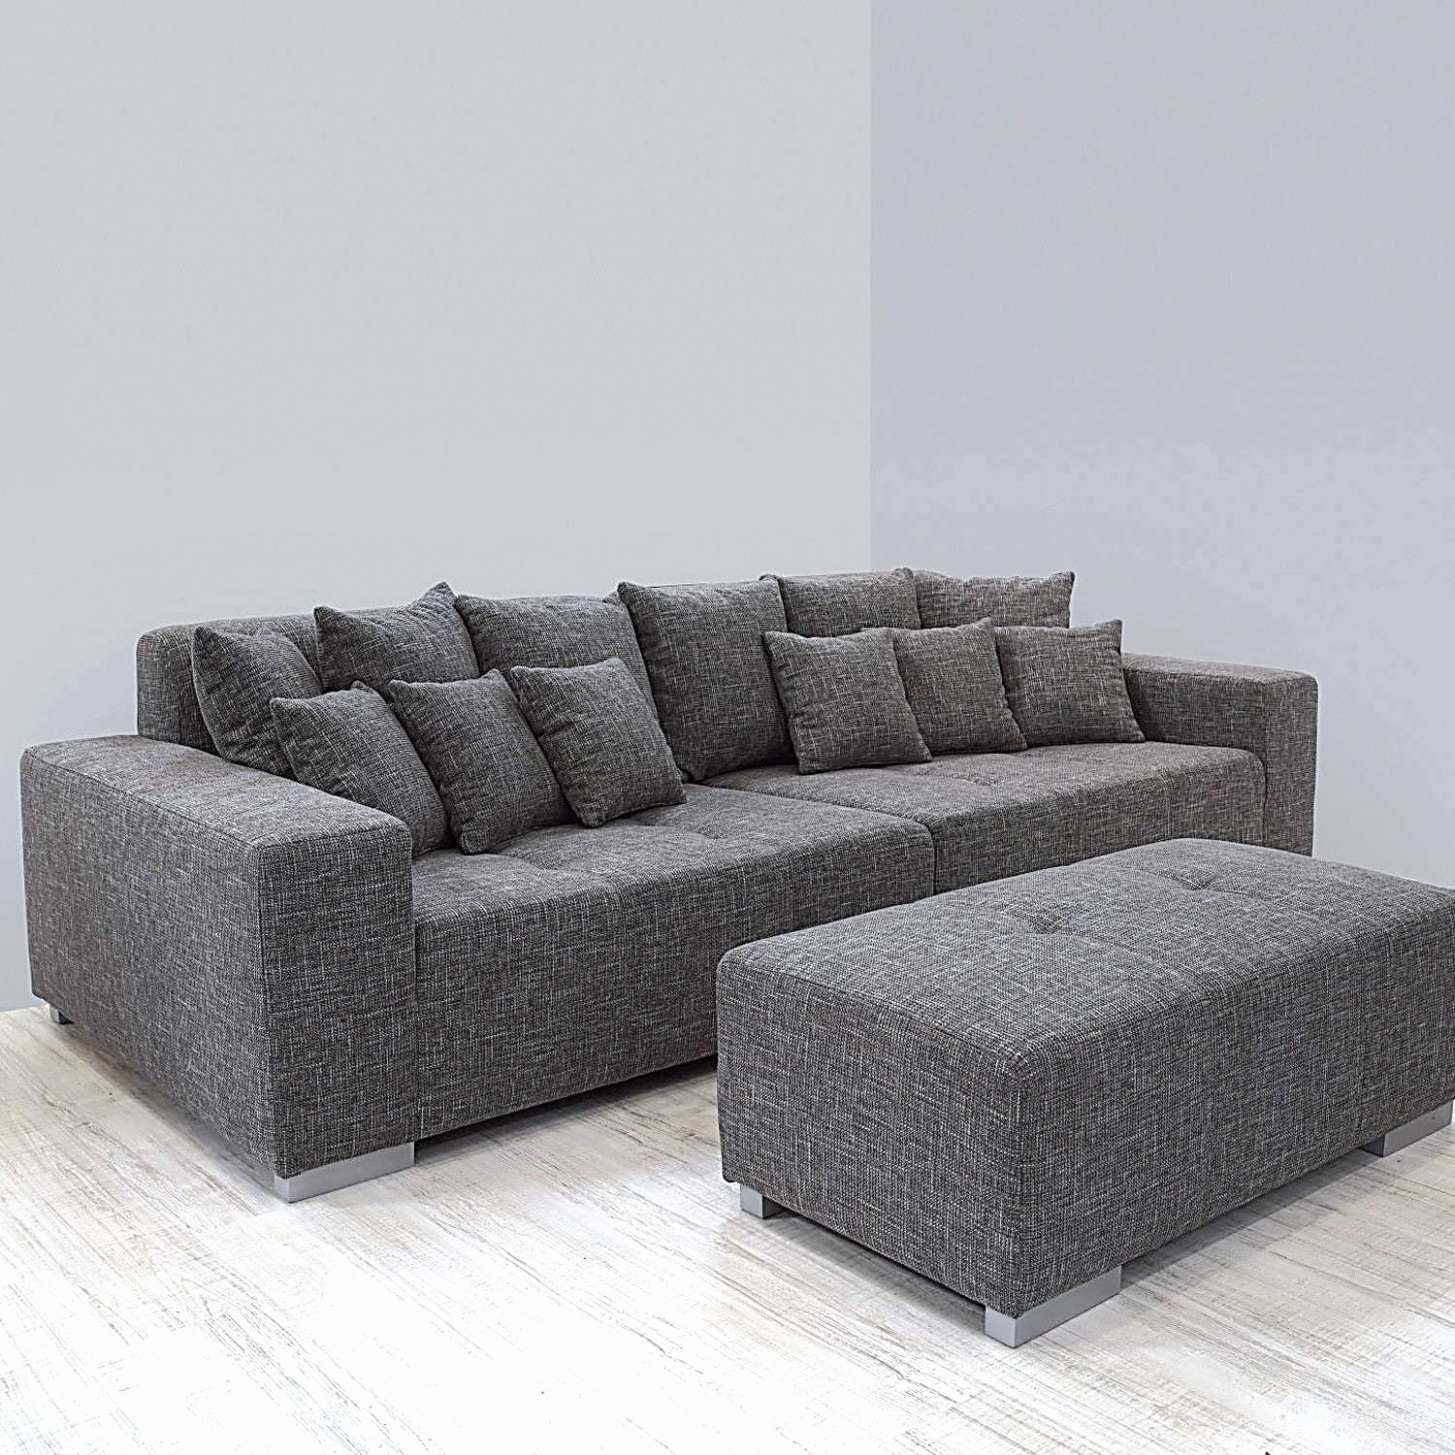 Gartendeko Günstig Online Kaufen Luxus Xxl Lutz Big sofa